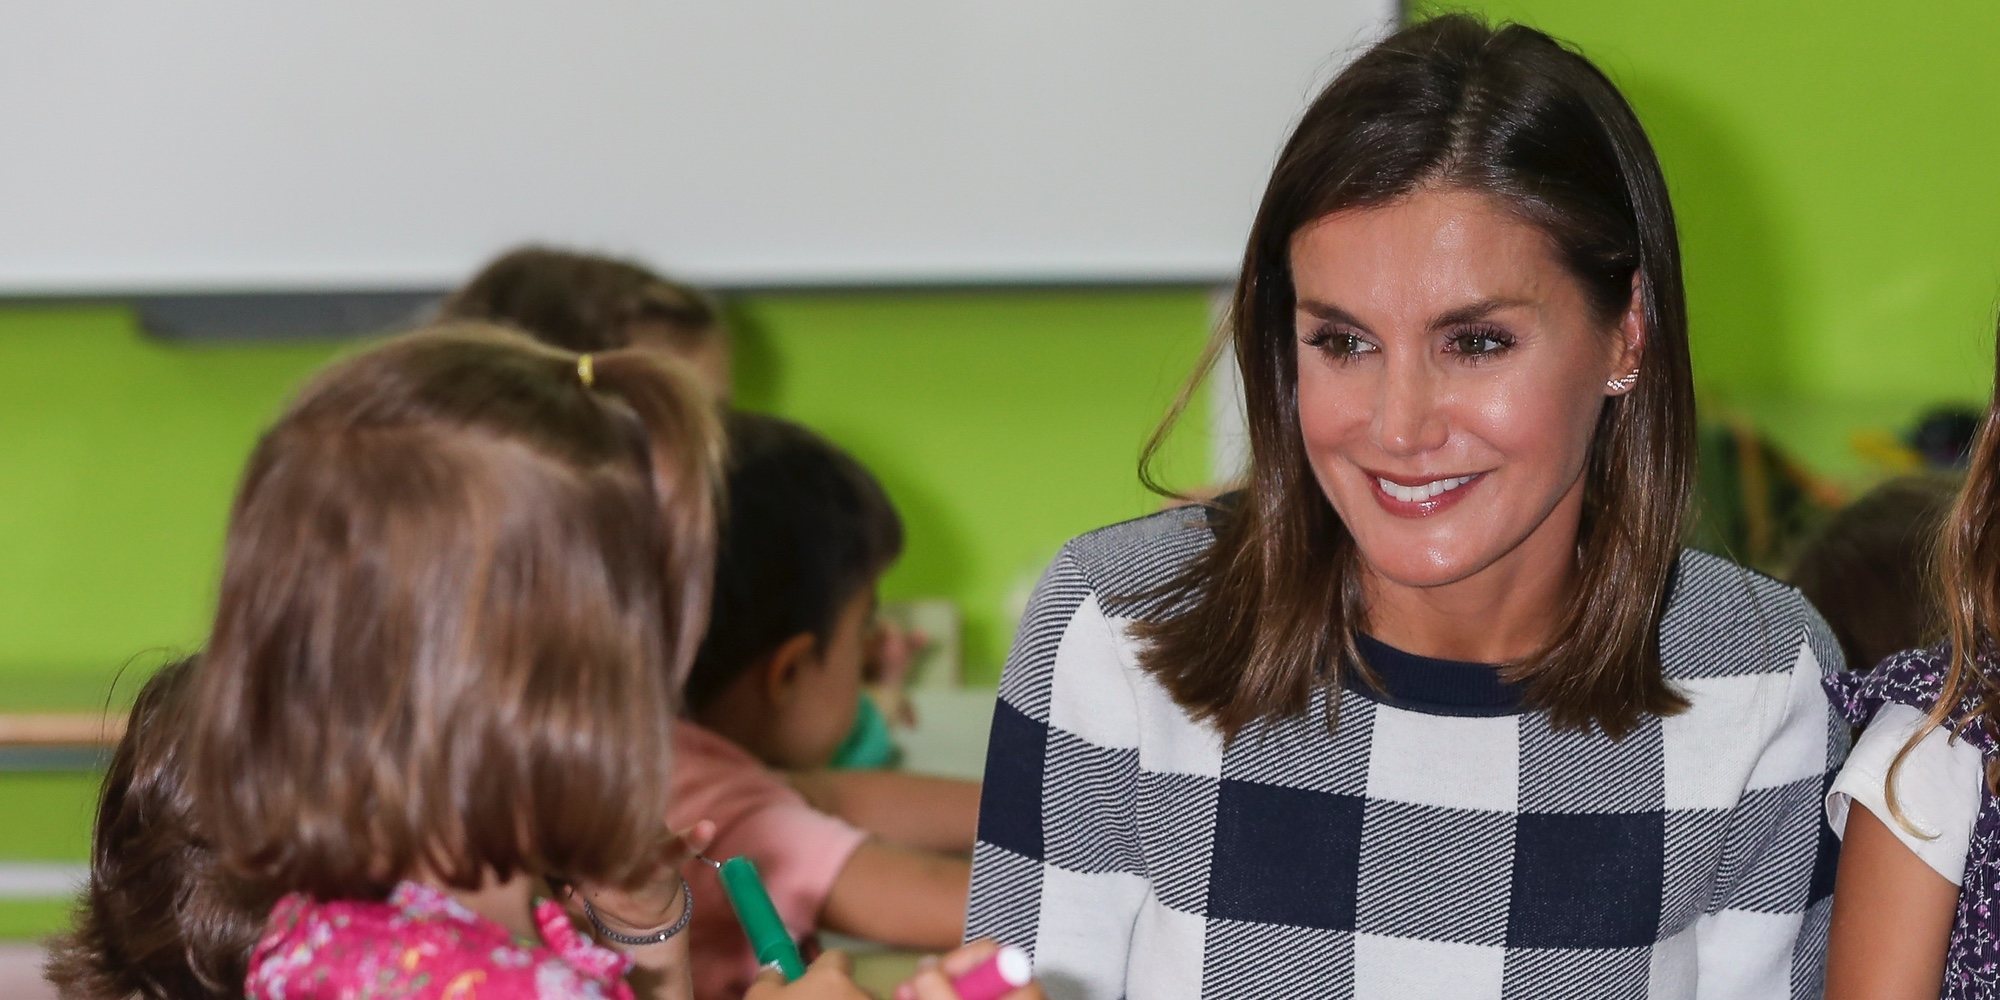 La Reina Letizia inaugura el Curso Escolar 2018/2019 con una gran sonrisa en un colegio de Oviedo